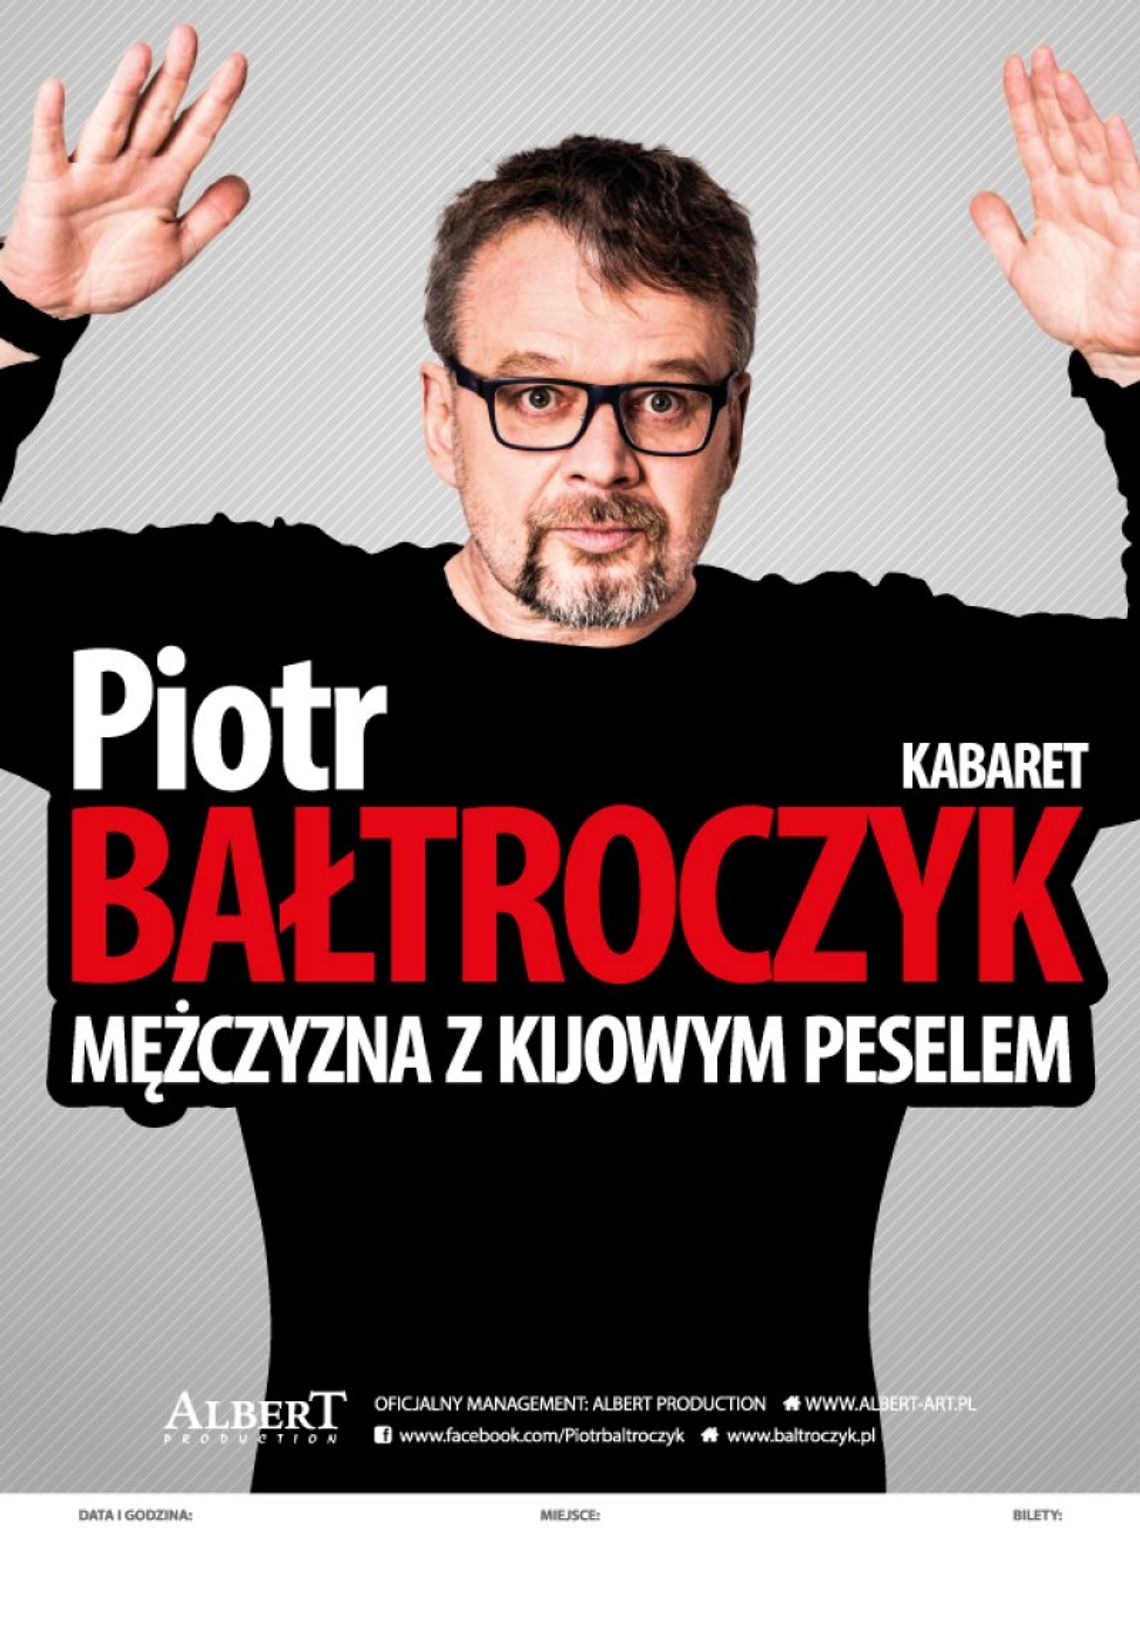 Piotr Bałtroczyk w programie „Mężczyzna z kijowym peselem".